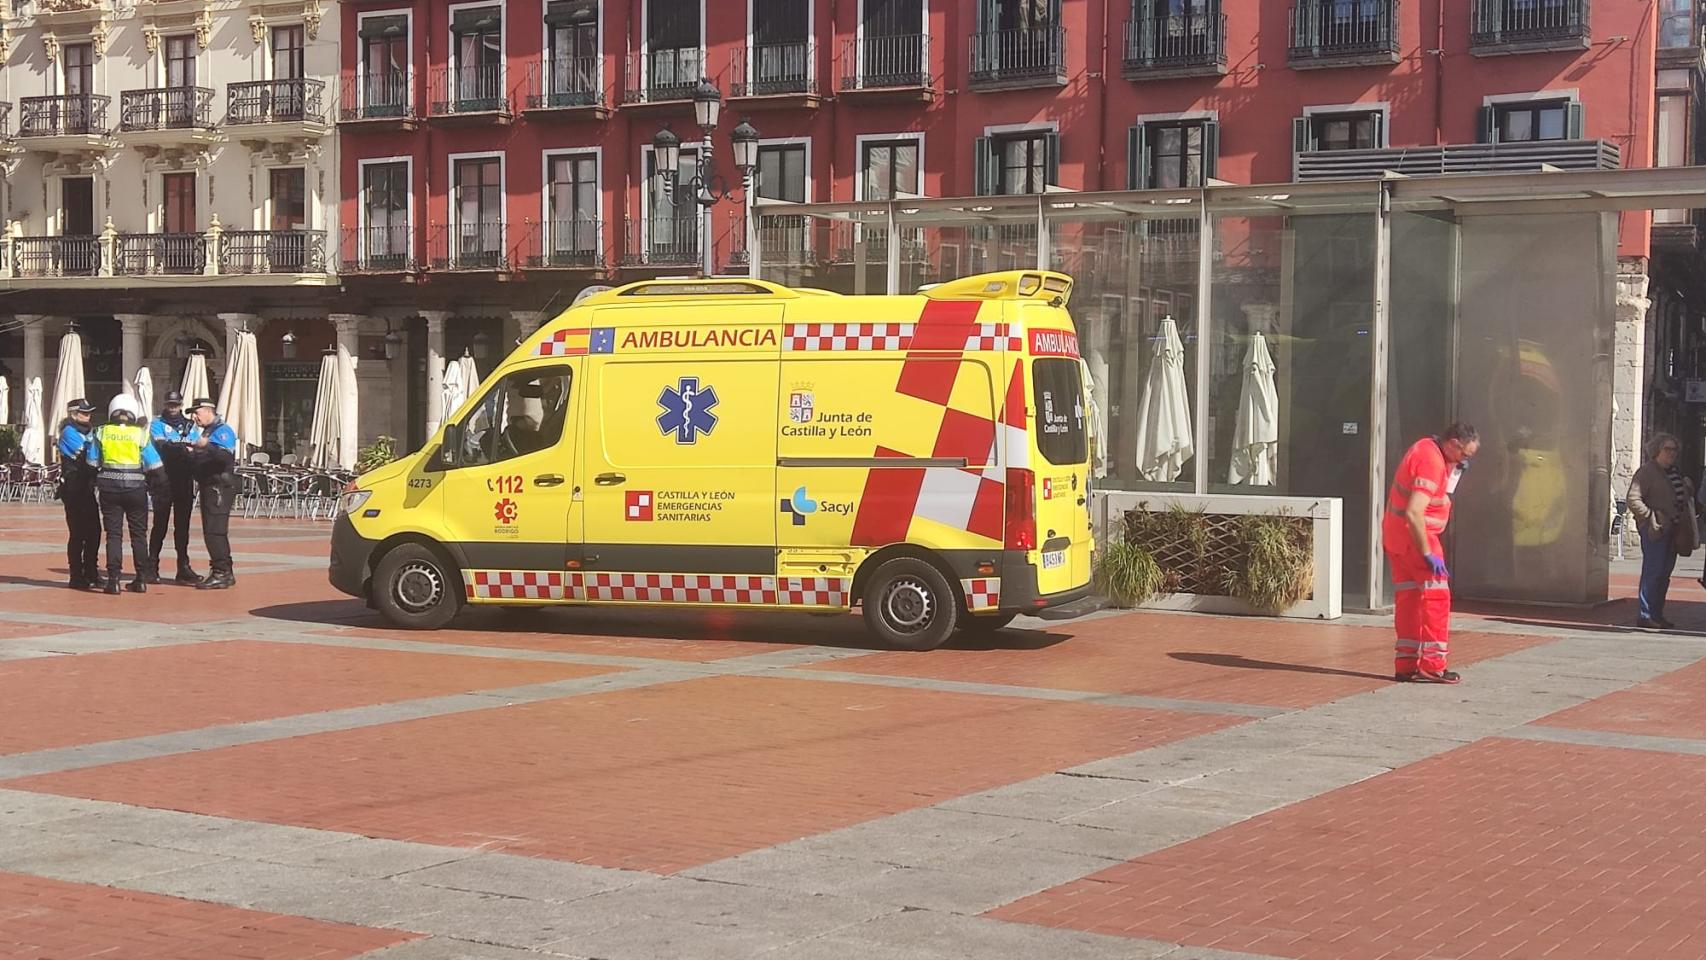 La ambulancia atiende al hombre herido en el parking de la Plaza Mayor de Valladolid